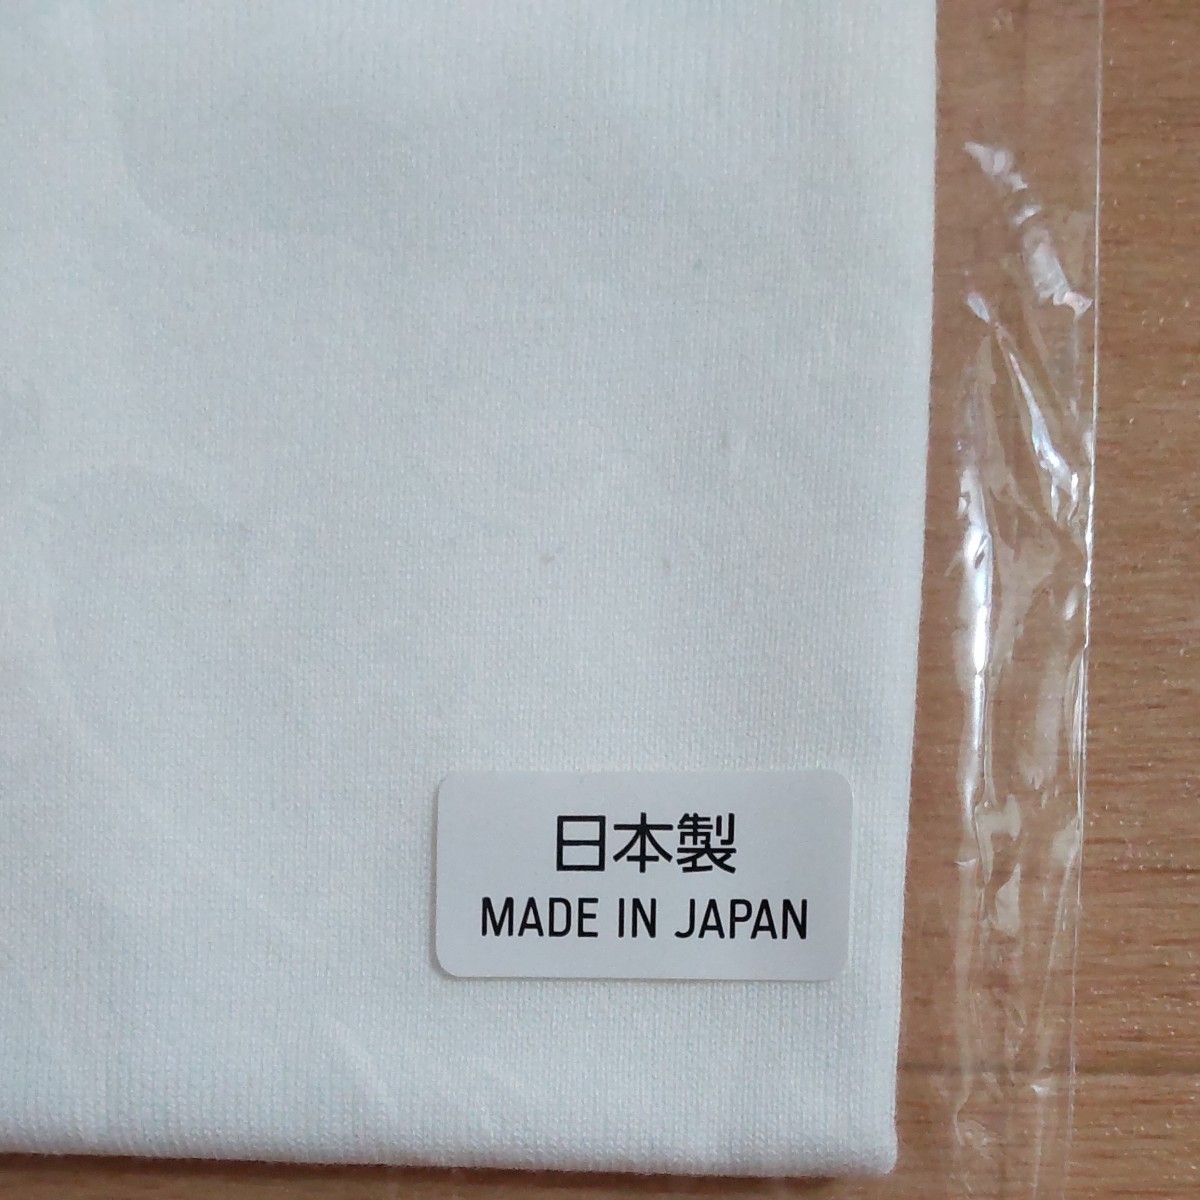 ☆新品未開封☆東京2020オリンピック 公式ライセンス Tシャツ  白  Mサイズ